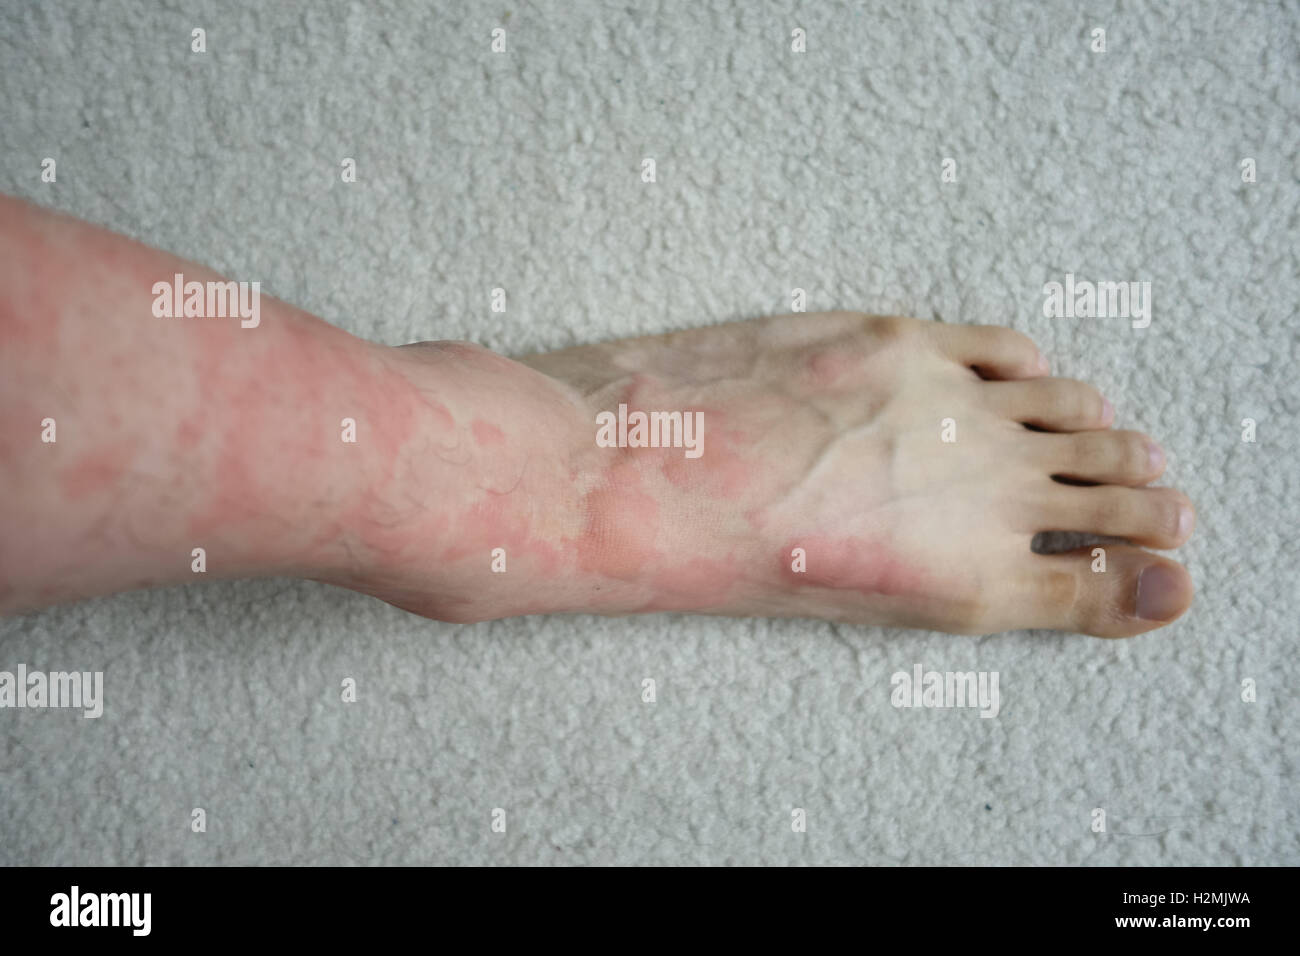 Pelle reazione allergica hive rash il piede della gamba Foto Stock